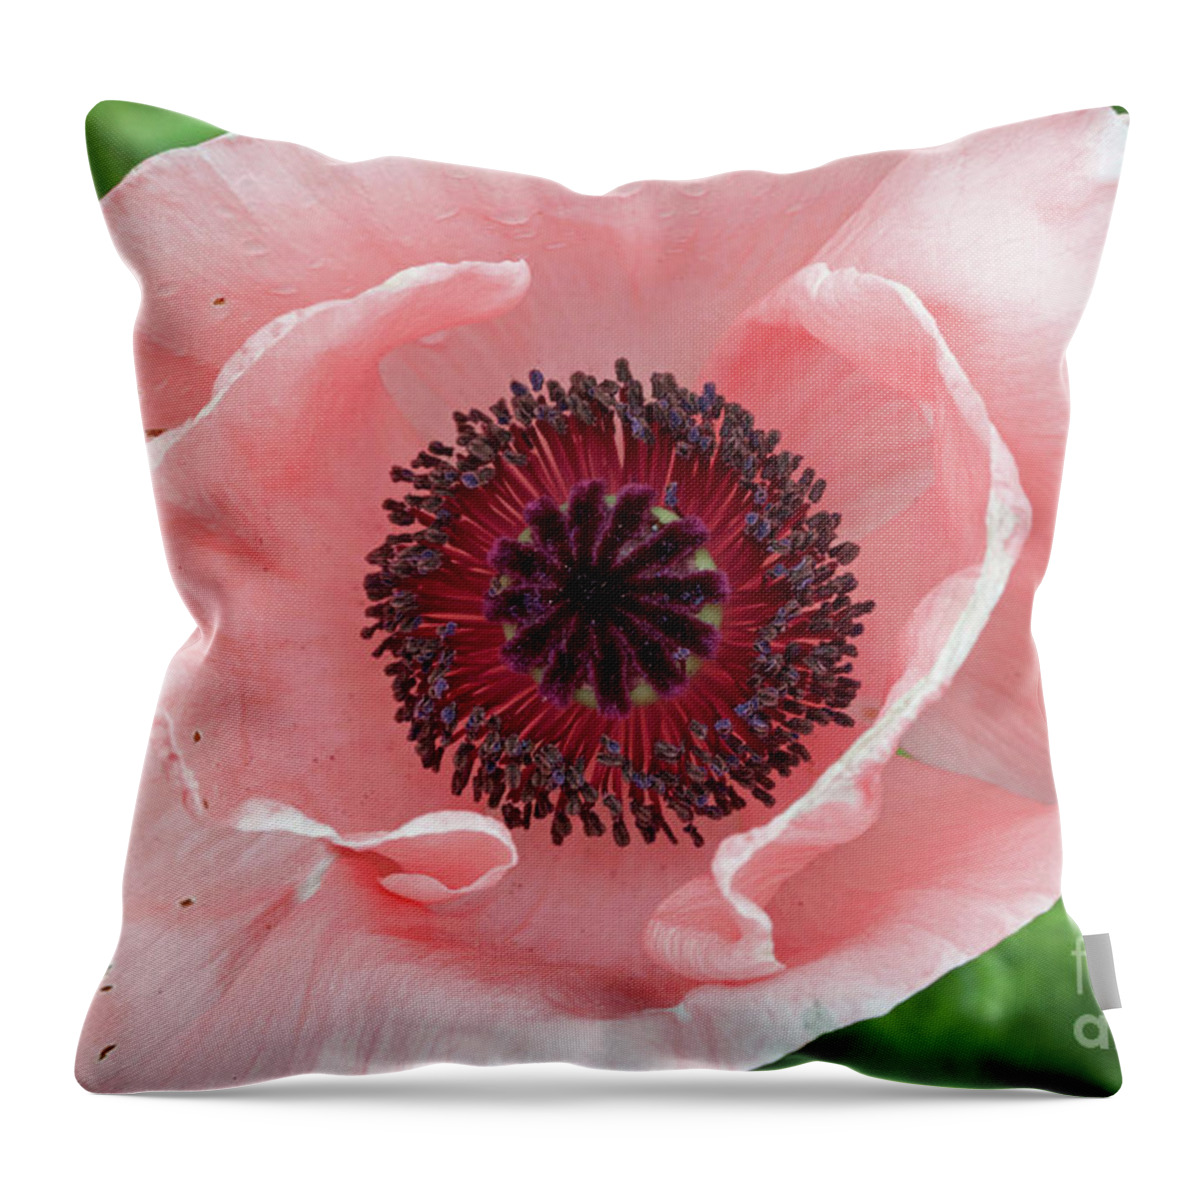 Flower Throw Pillow featuring the photograph Deep Pink by Jim Gillen